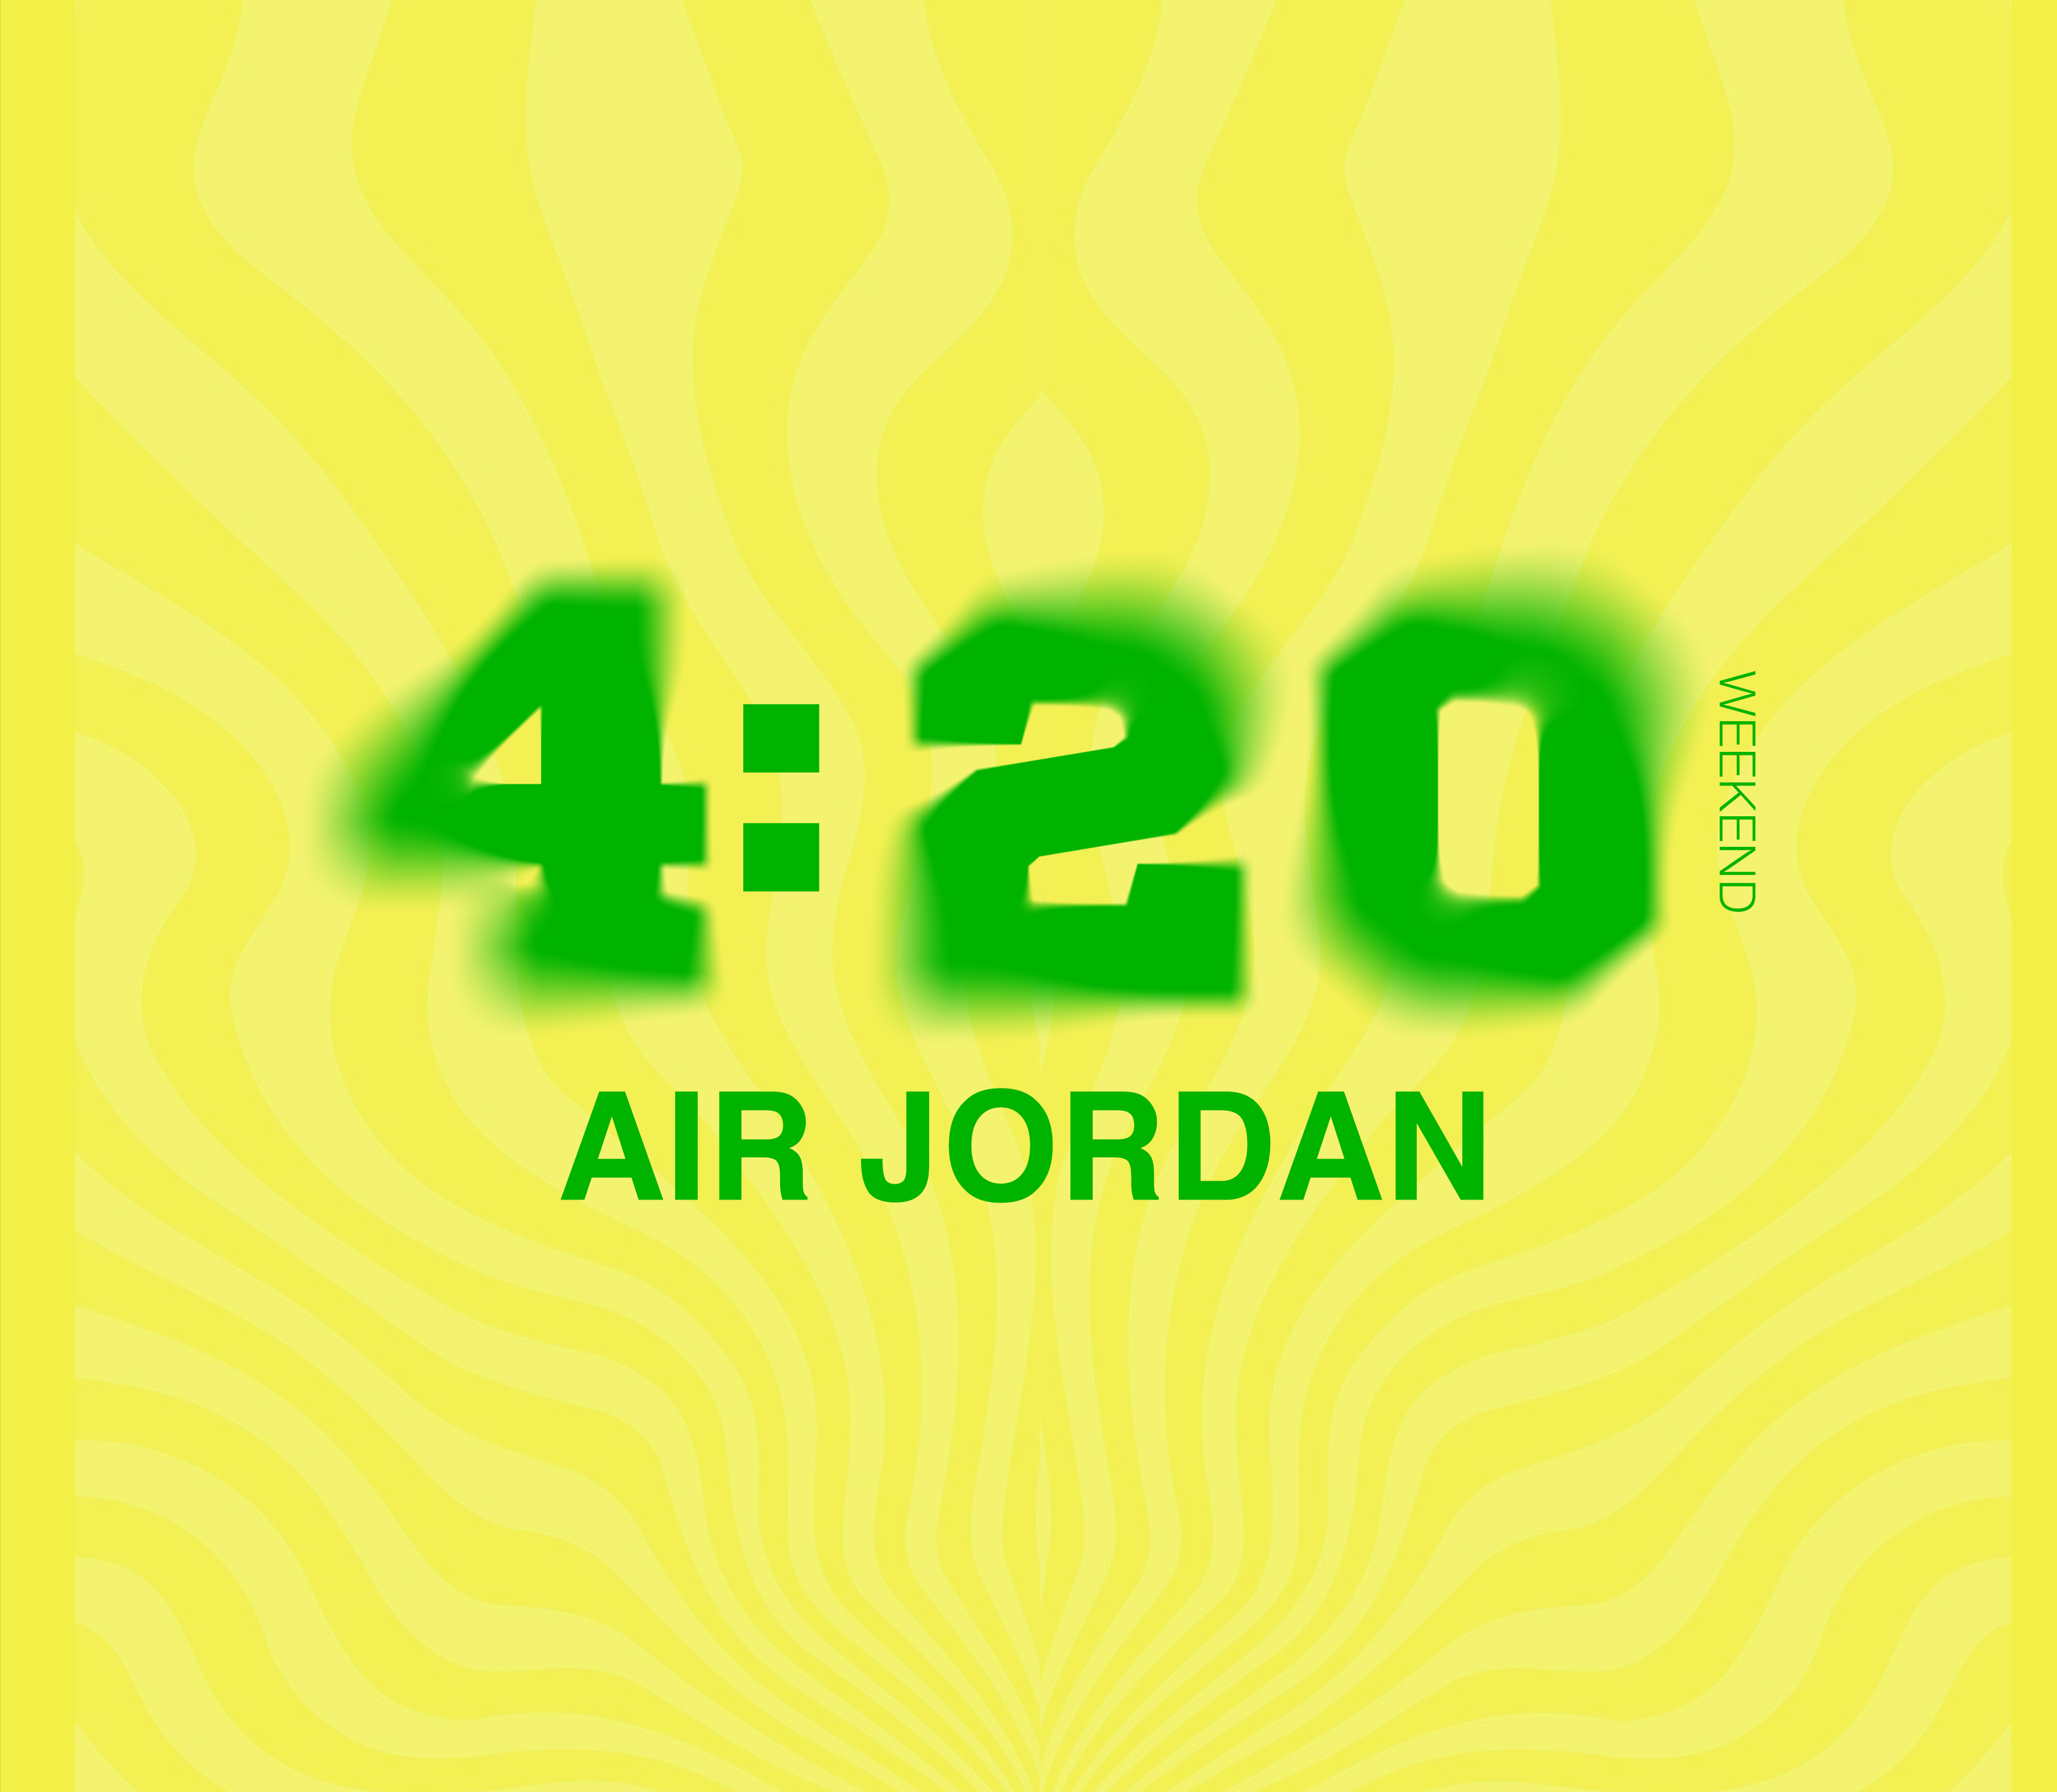 420 AIR JORDAN